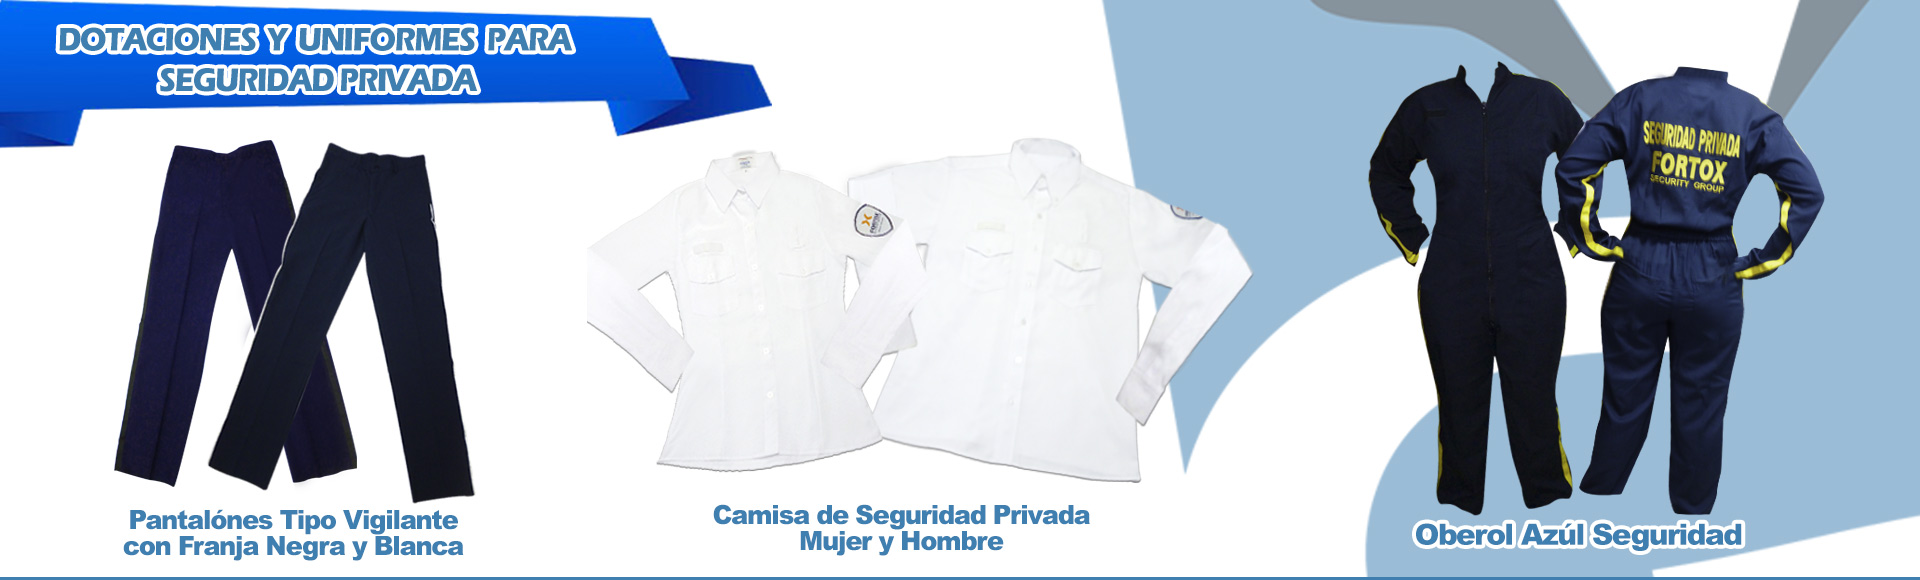 slide-de-dotaciones-y-uniformes-para-seguridad-privada